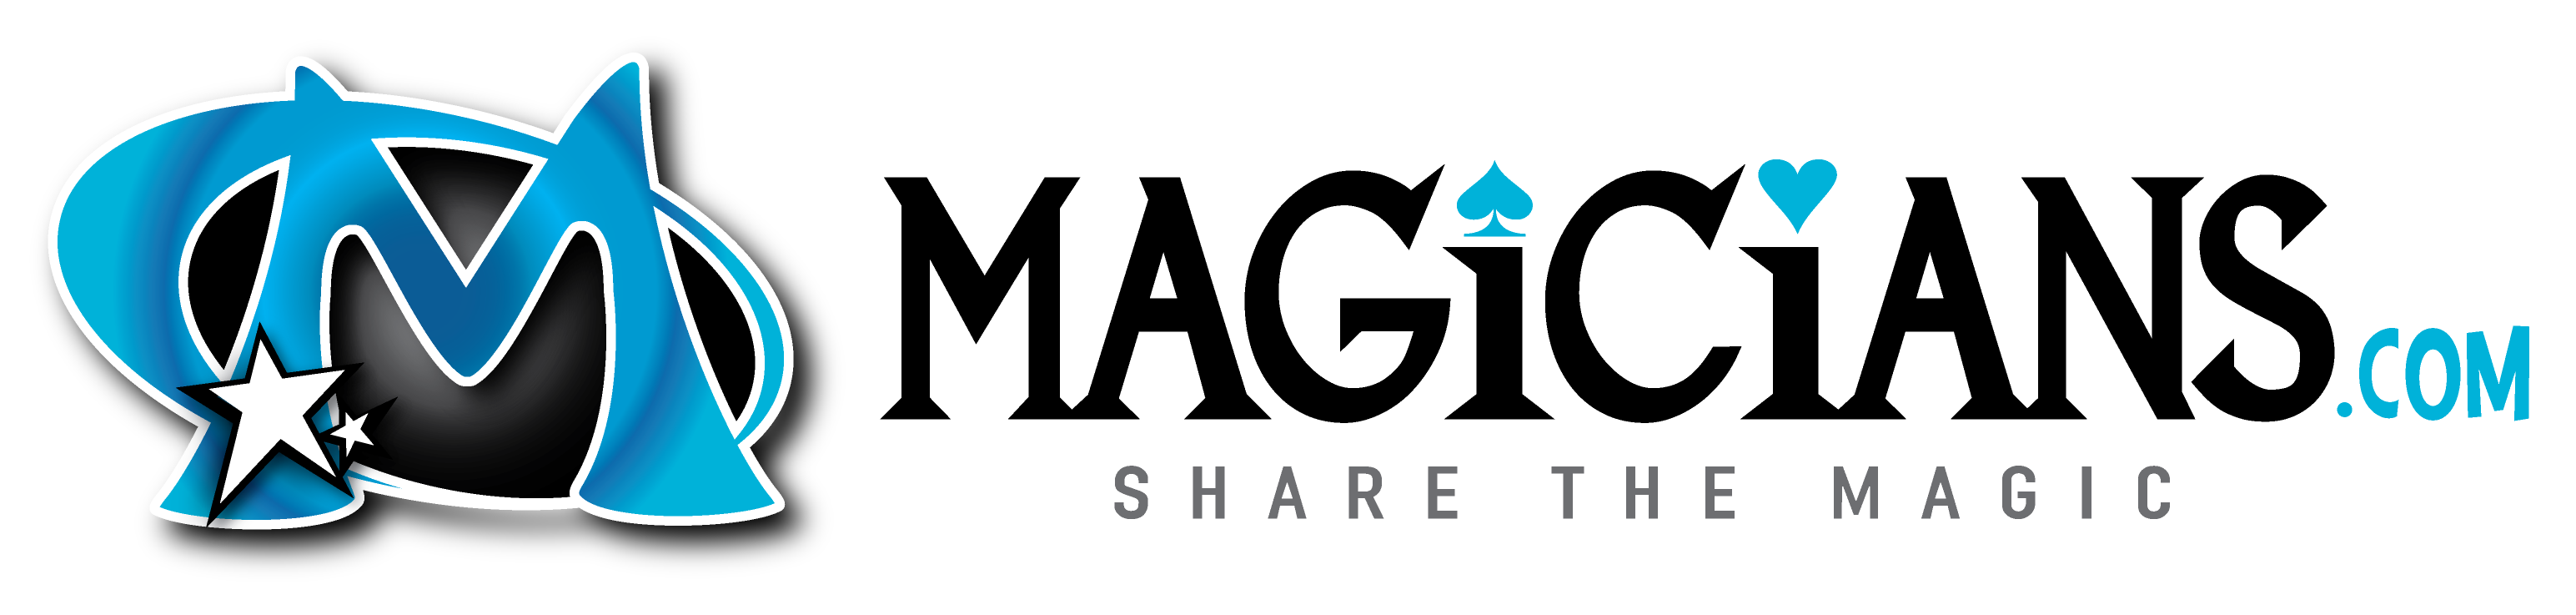 Magician.com | Magicians.com | Illusionist.com | MagicShops.com